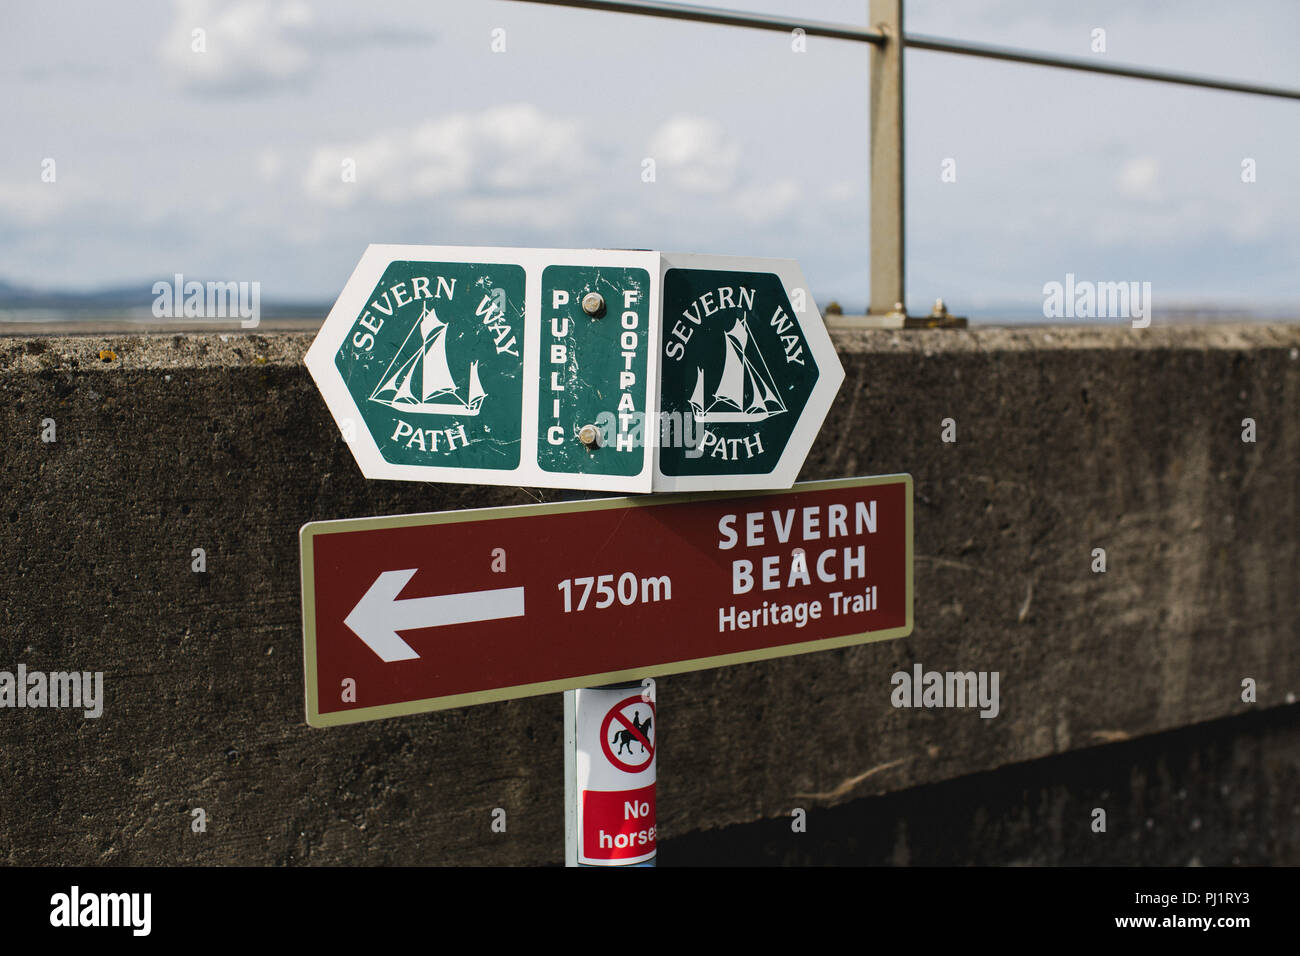 Cartel en la vía pública (Severn sendero costero de larga distancia a pie) con direcciones de Severn Beach Heritage Trail Foto de stock